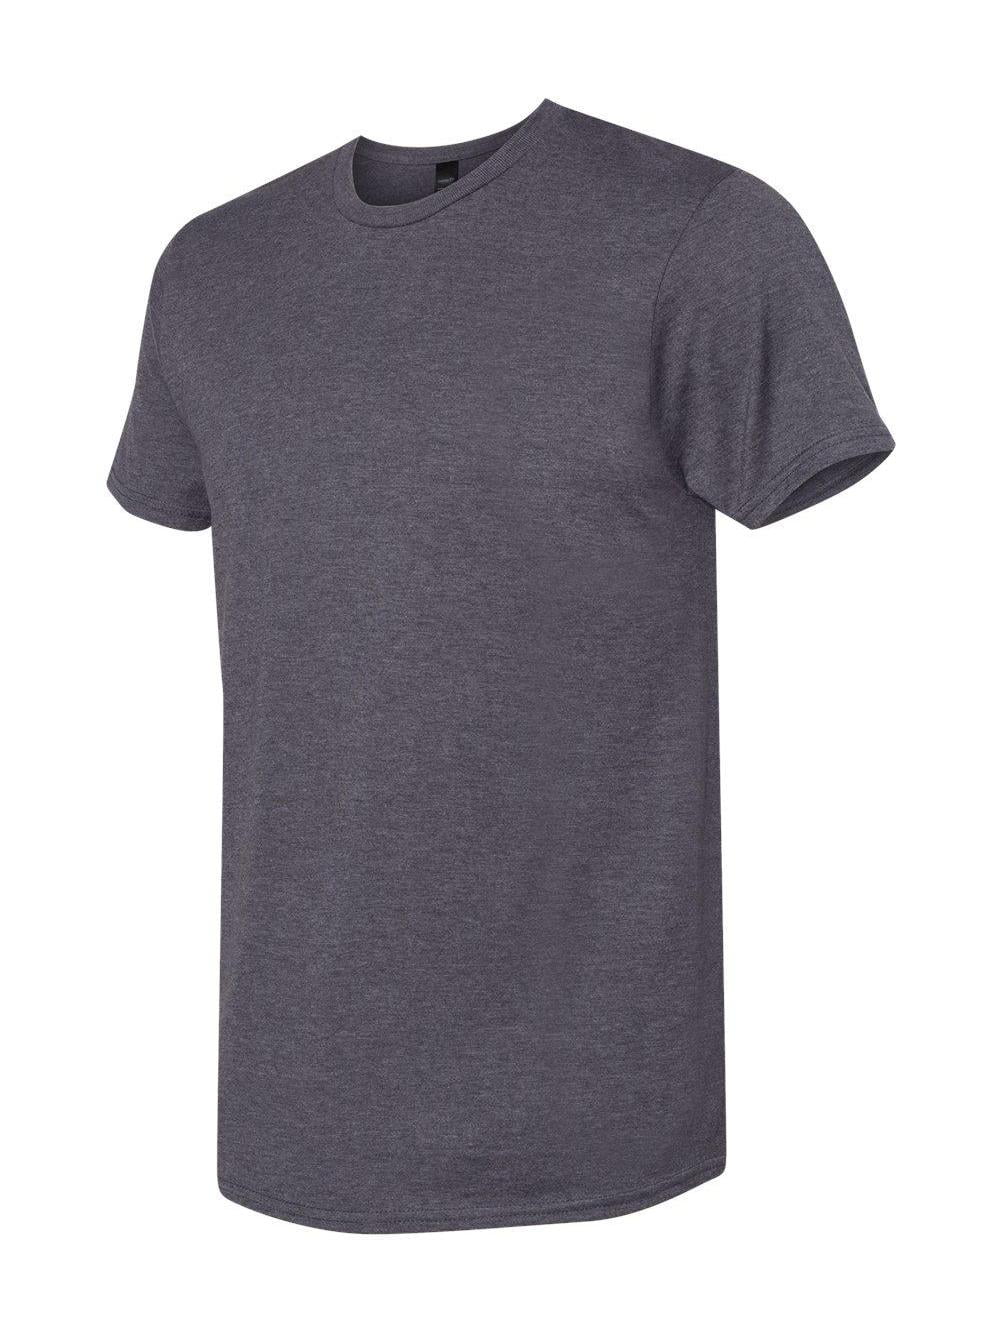 Hanes - Perfect-T T-Shirt - 4980 - Walmart.com